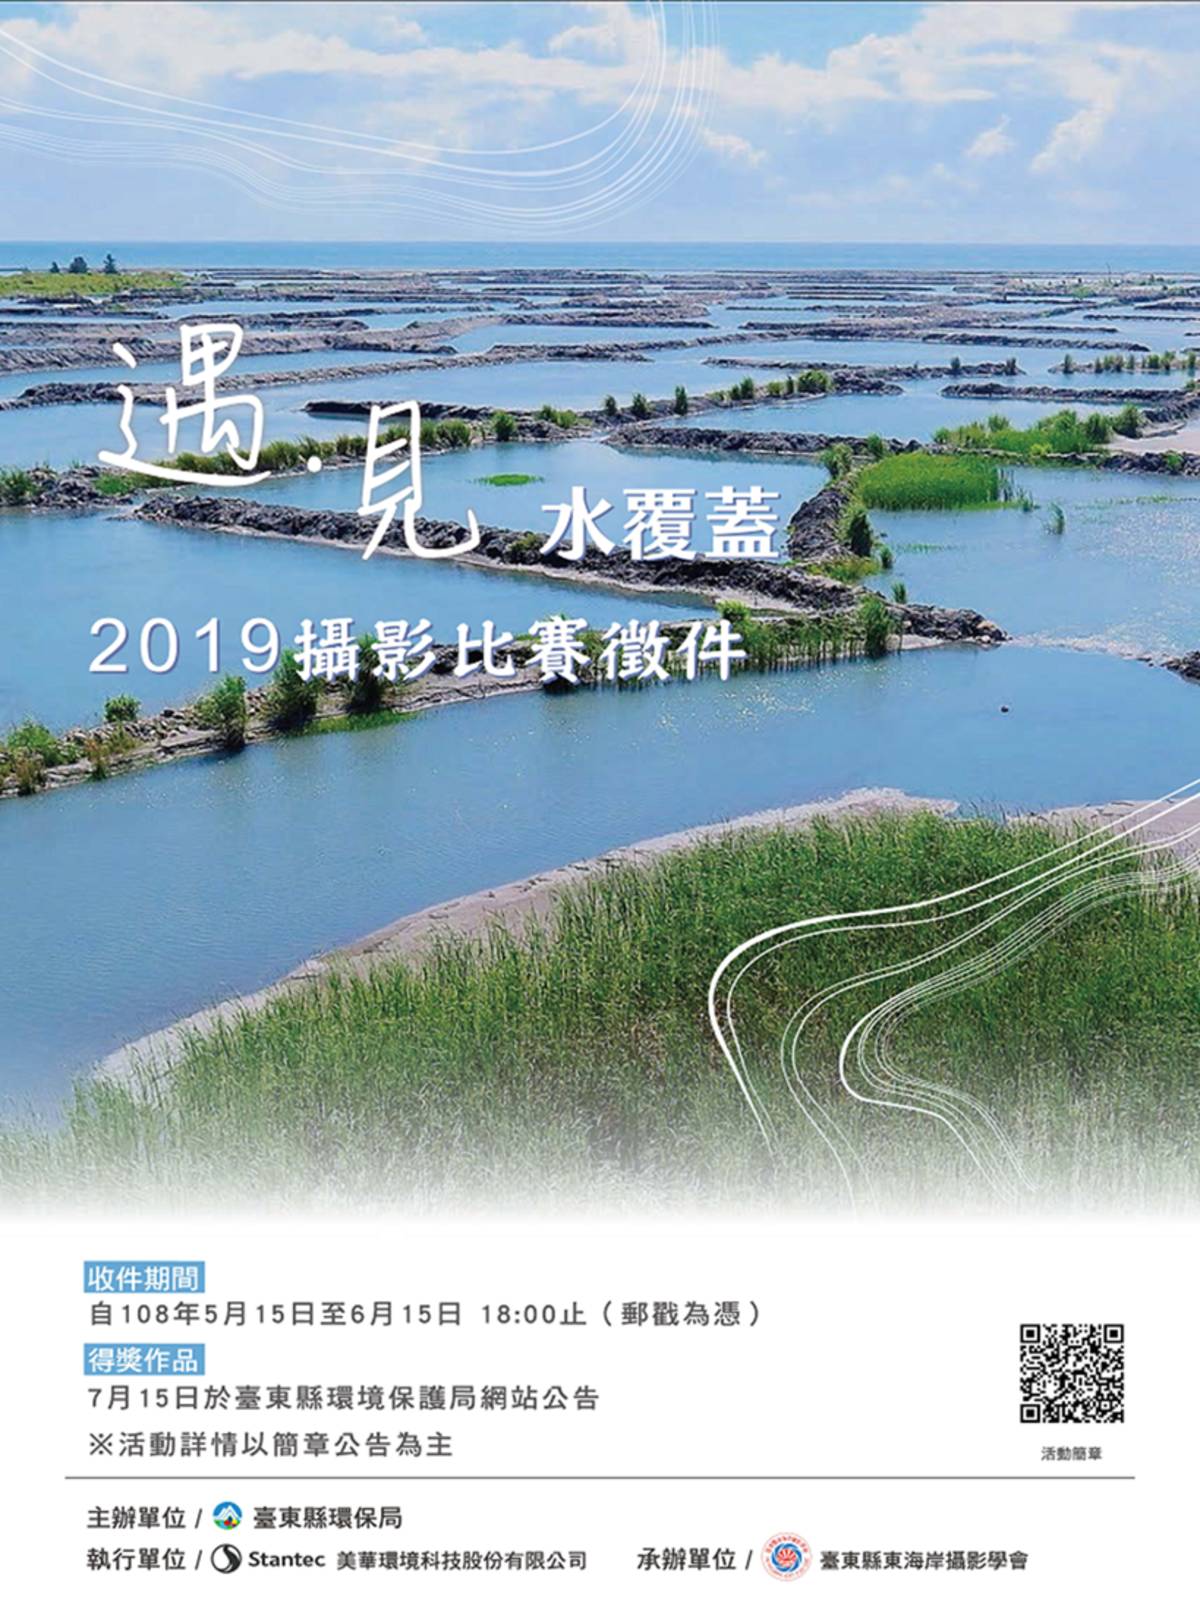 臺東縣「遇•見 水覆蓋」攝影比賽徵件至6月15日。